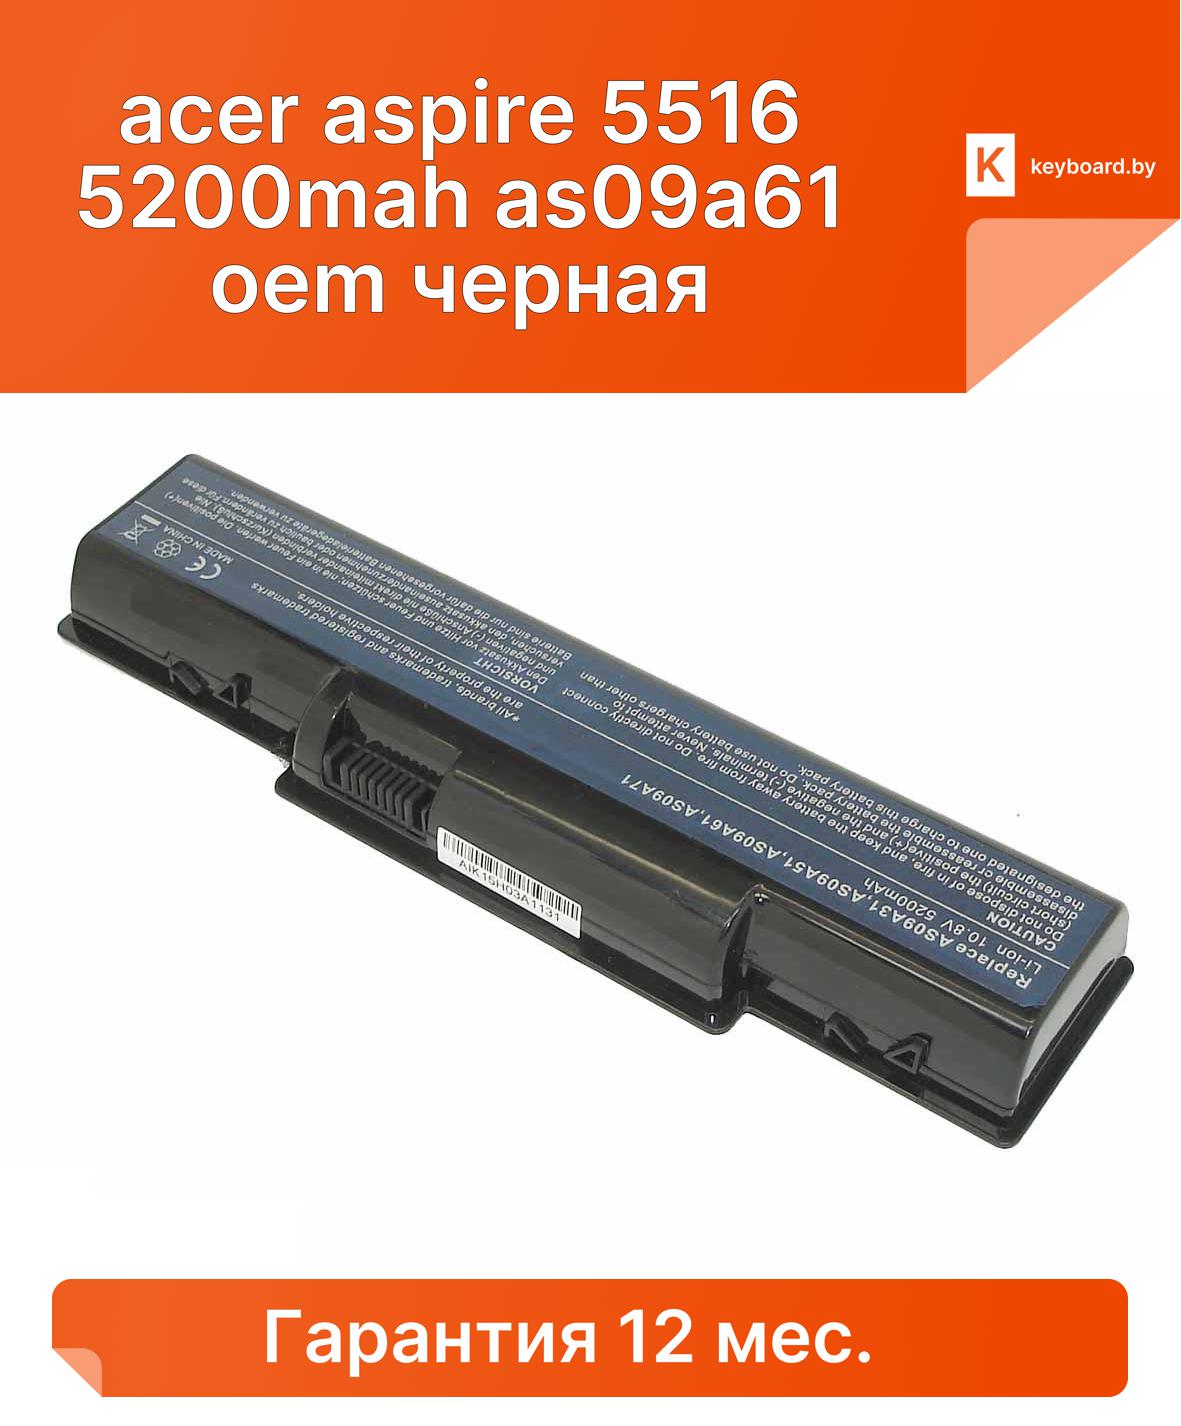 Аккумуляторная батарея для ноутбука acer aspire 5516 5200mah as09a61 oem черная